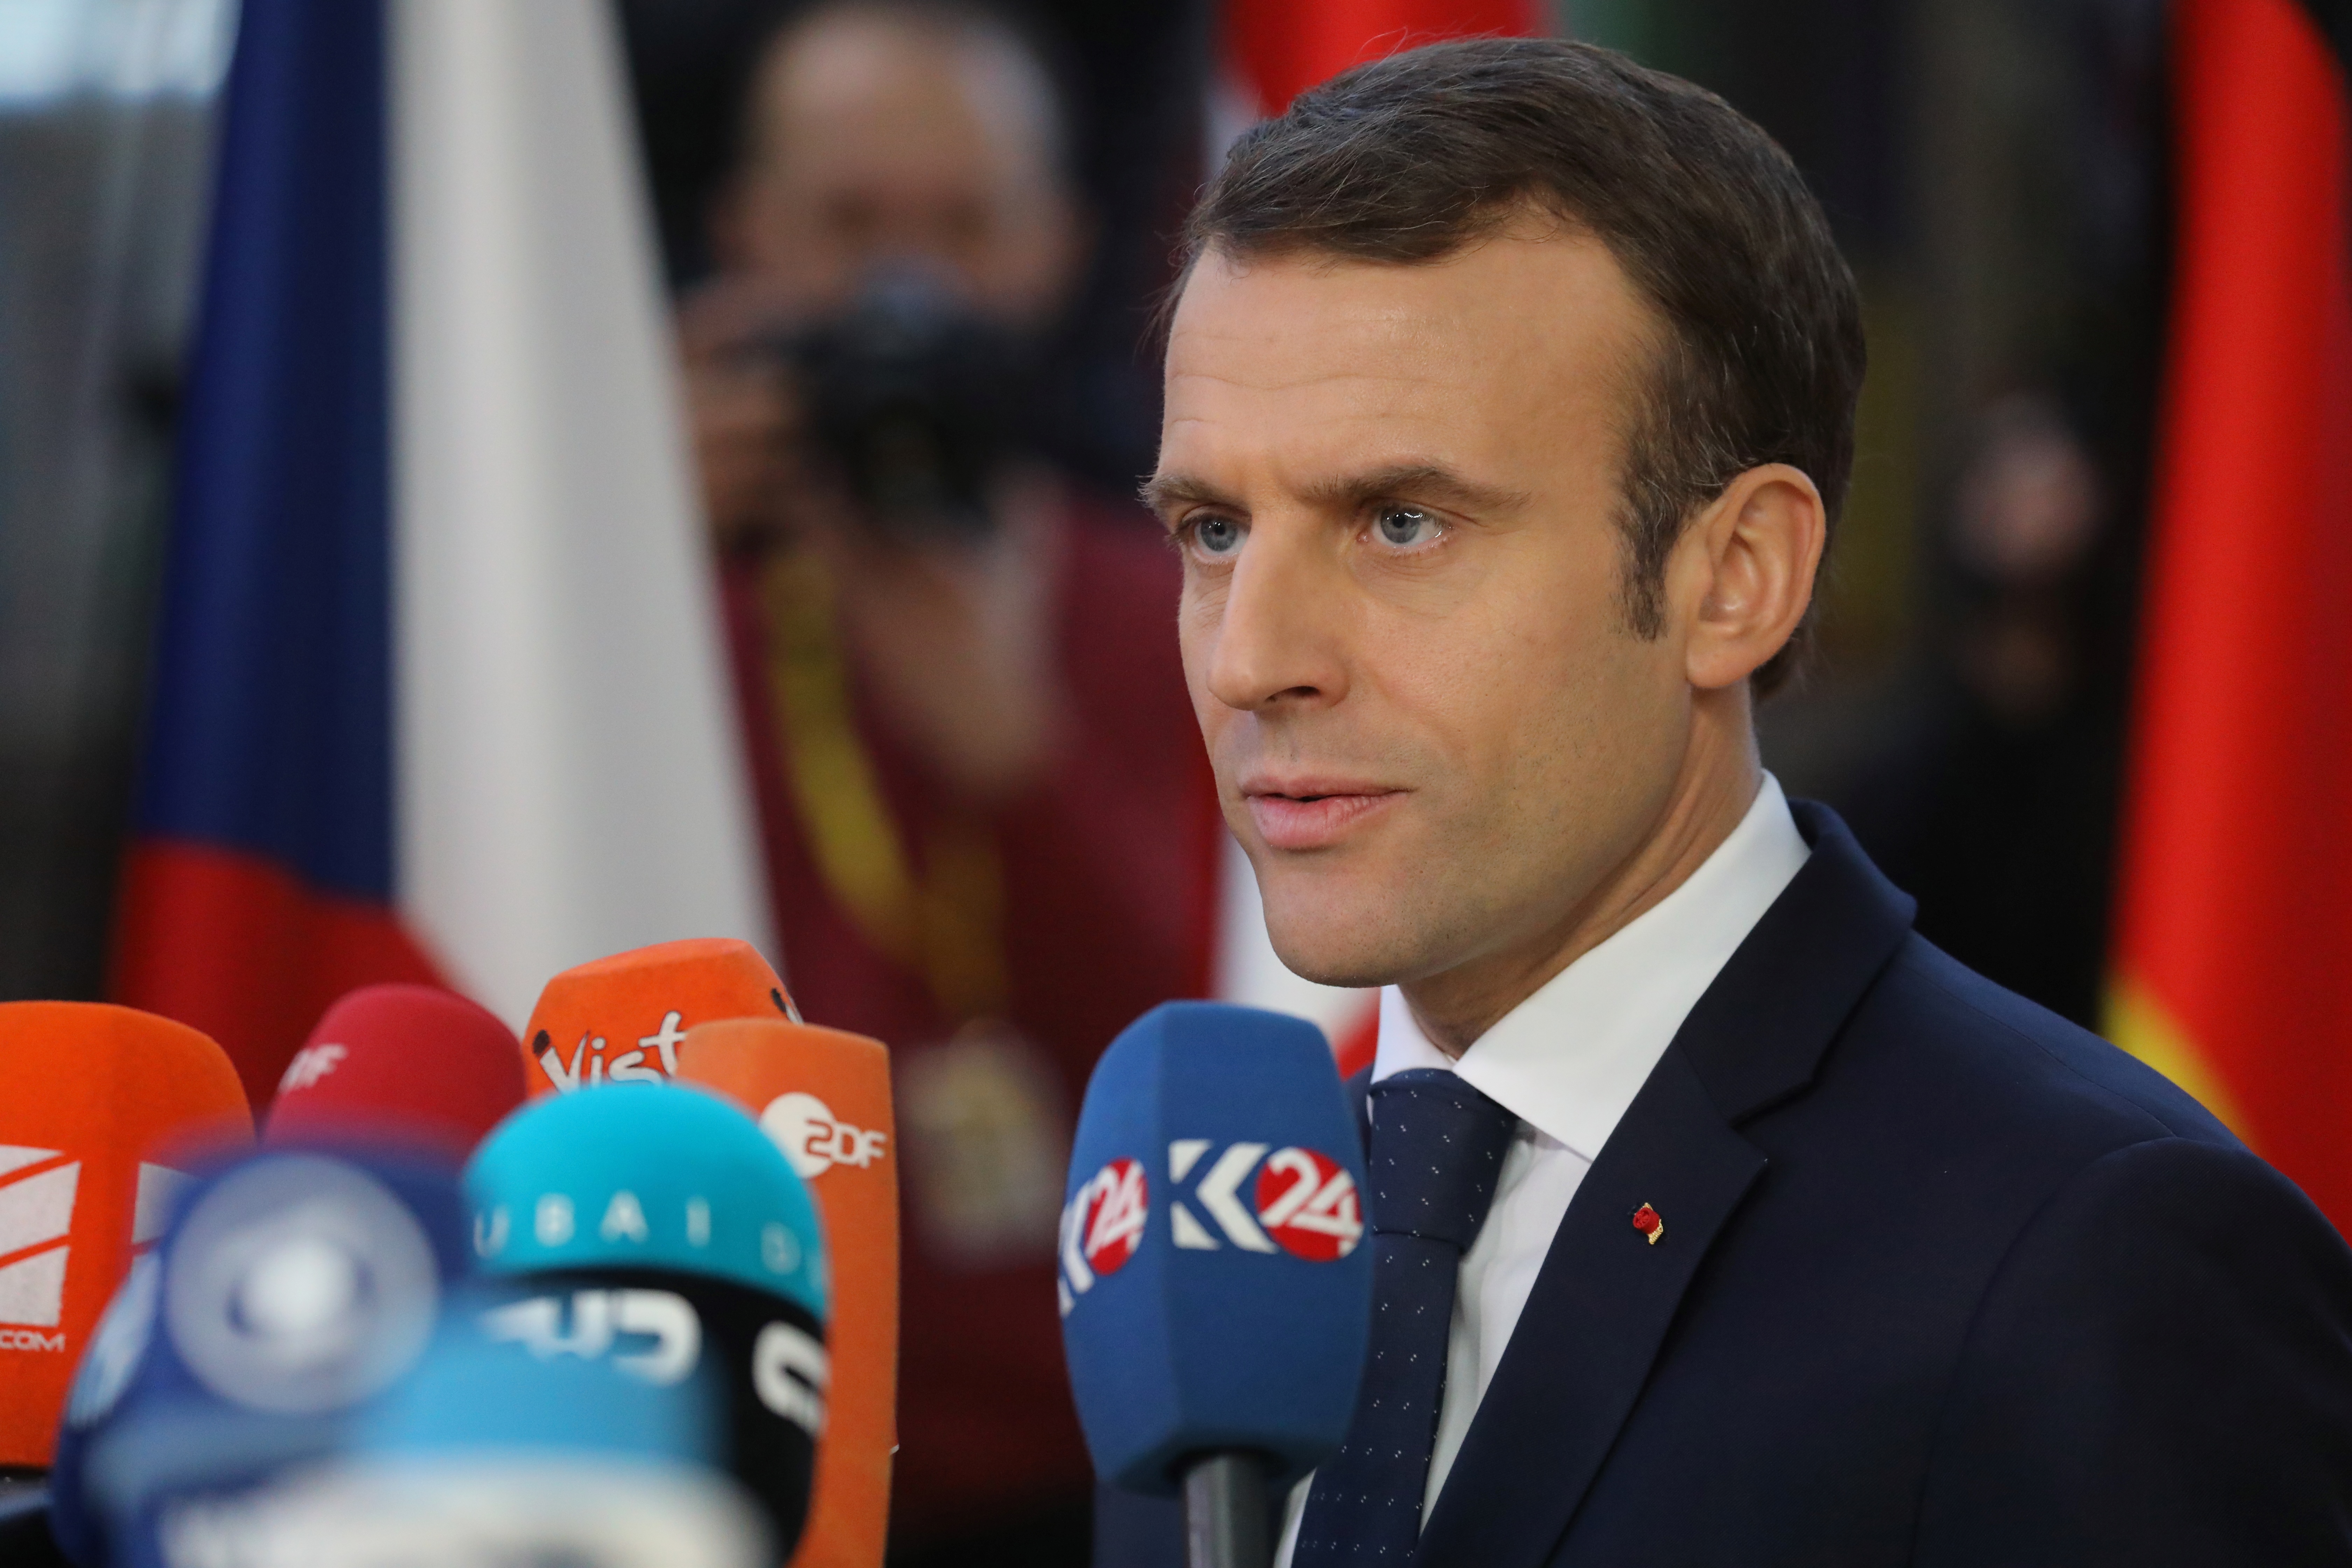 Macron defiende sus propuestas como legítimas ante cólera de chalecos amarillos